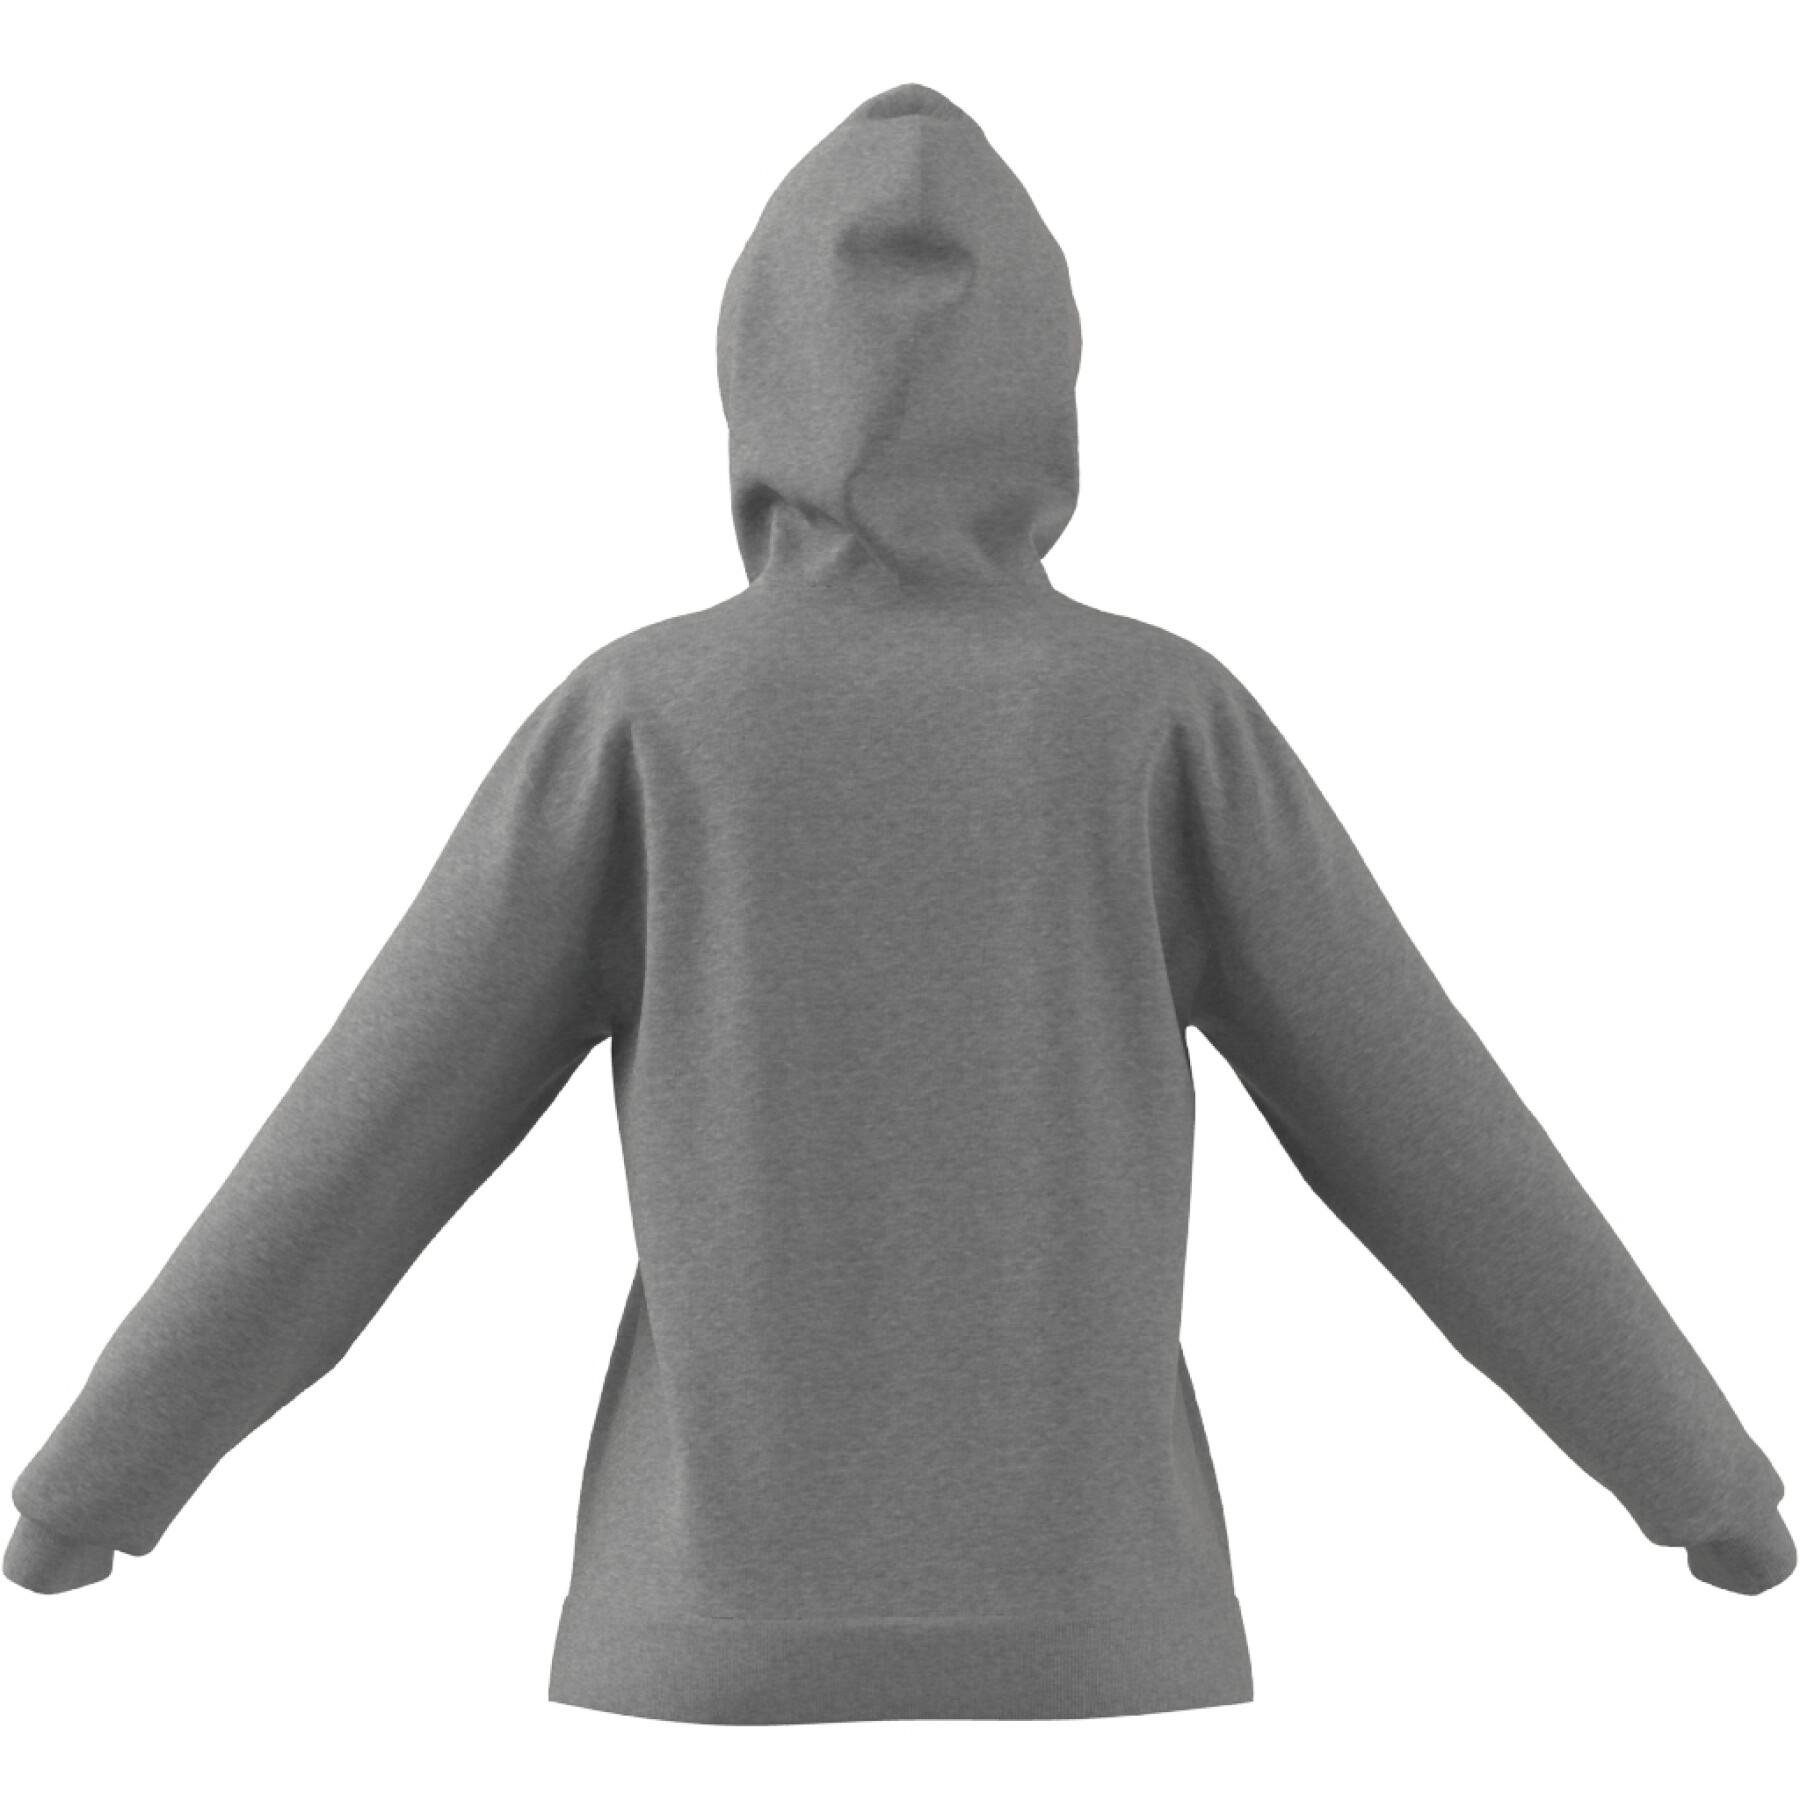 Sweatshirt sudadera con capucha para mujer adidas Essentials